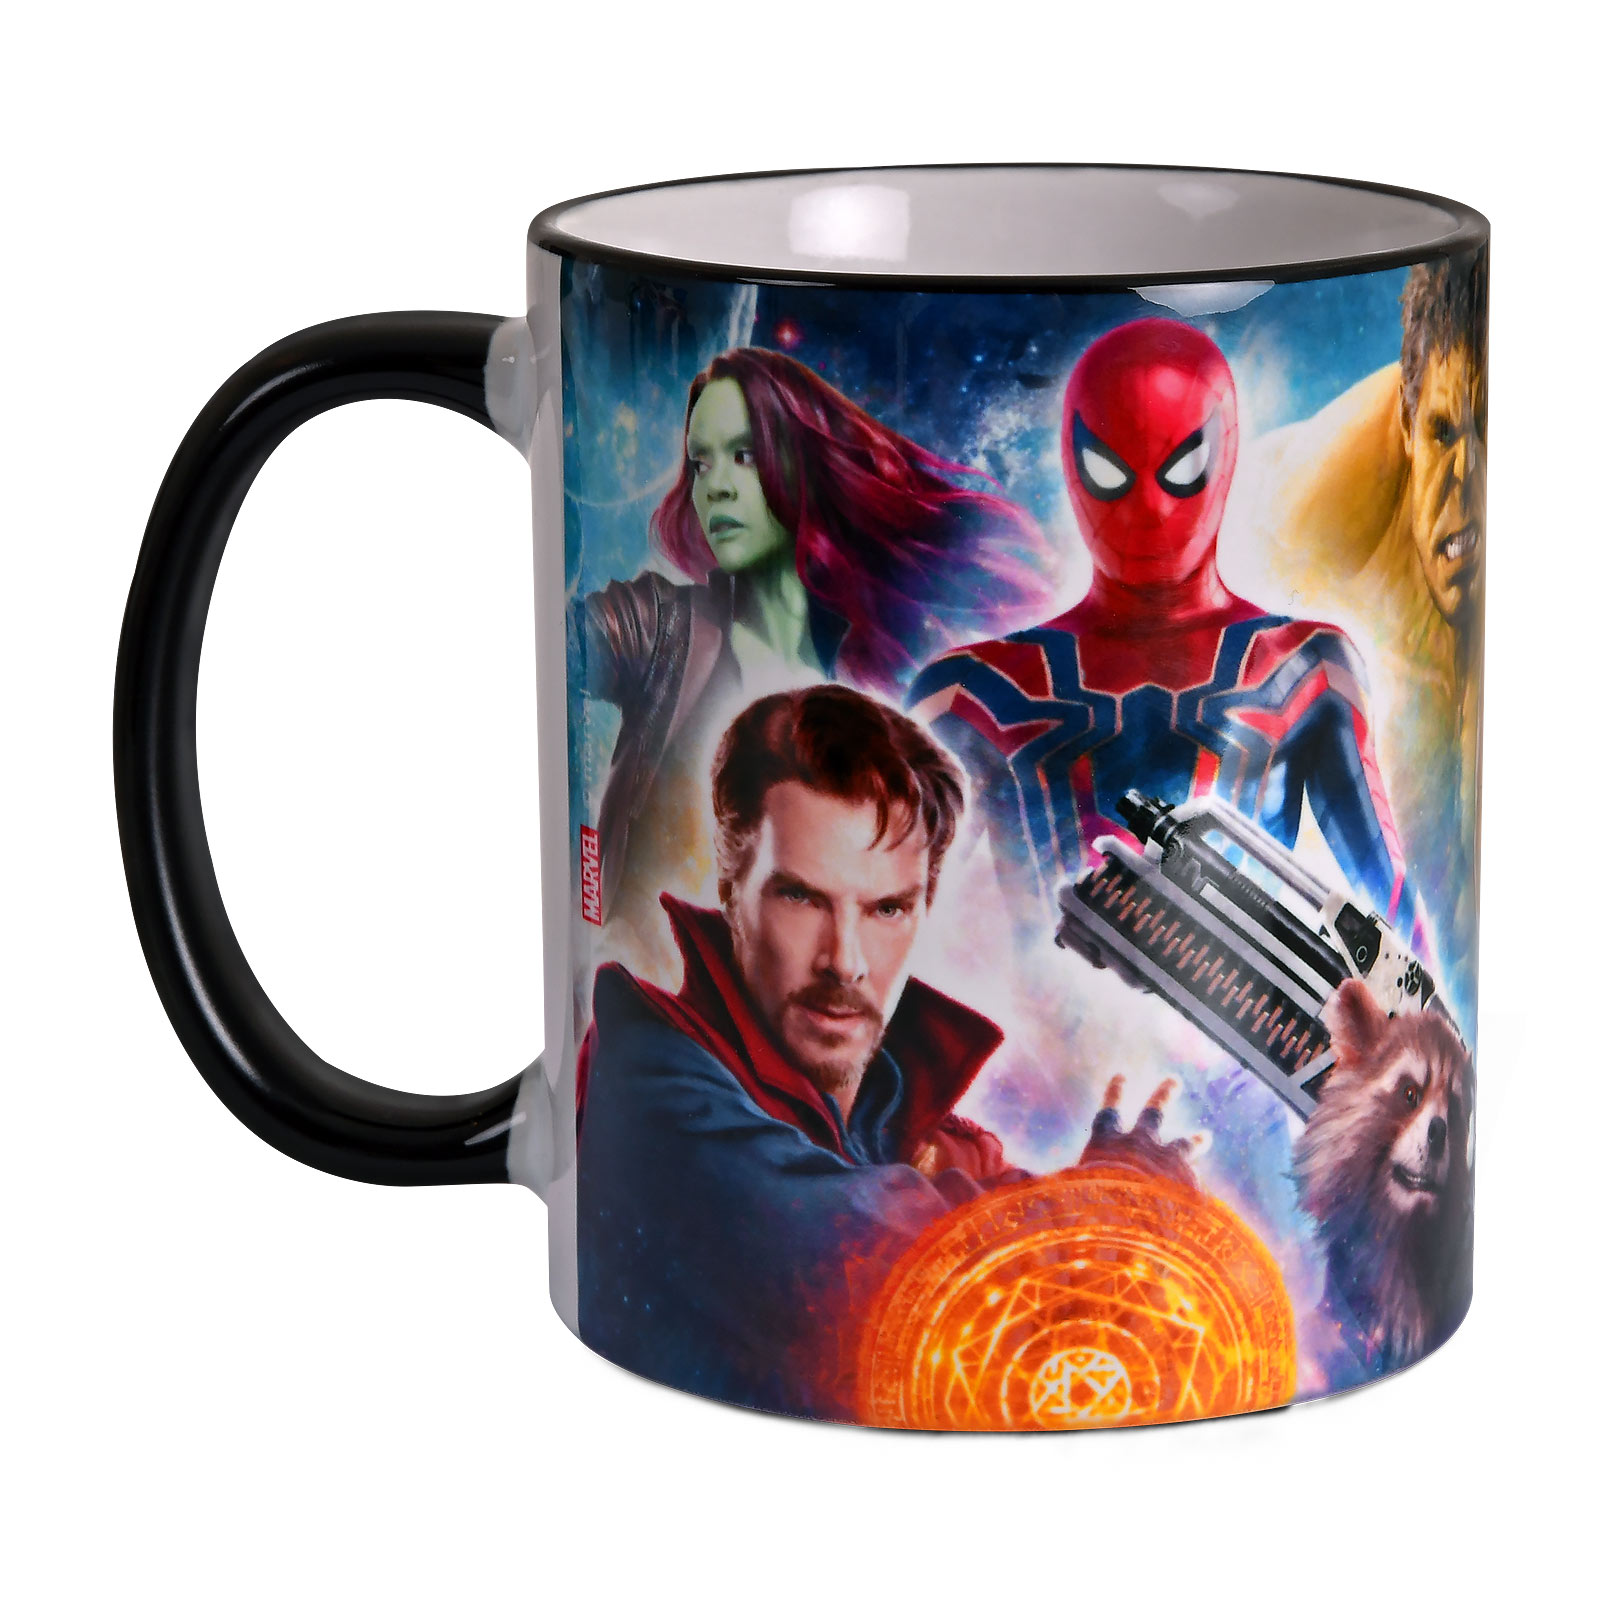 Avengers - Infinity Heroes Collage Mug